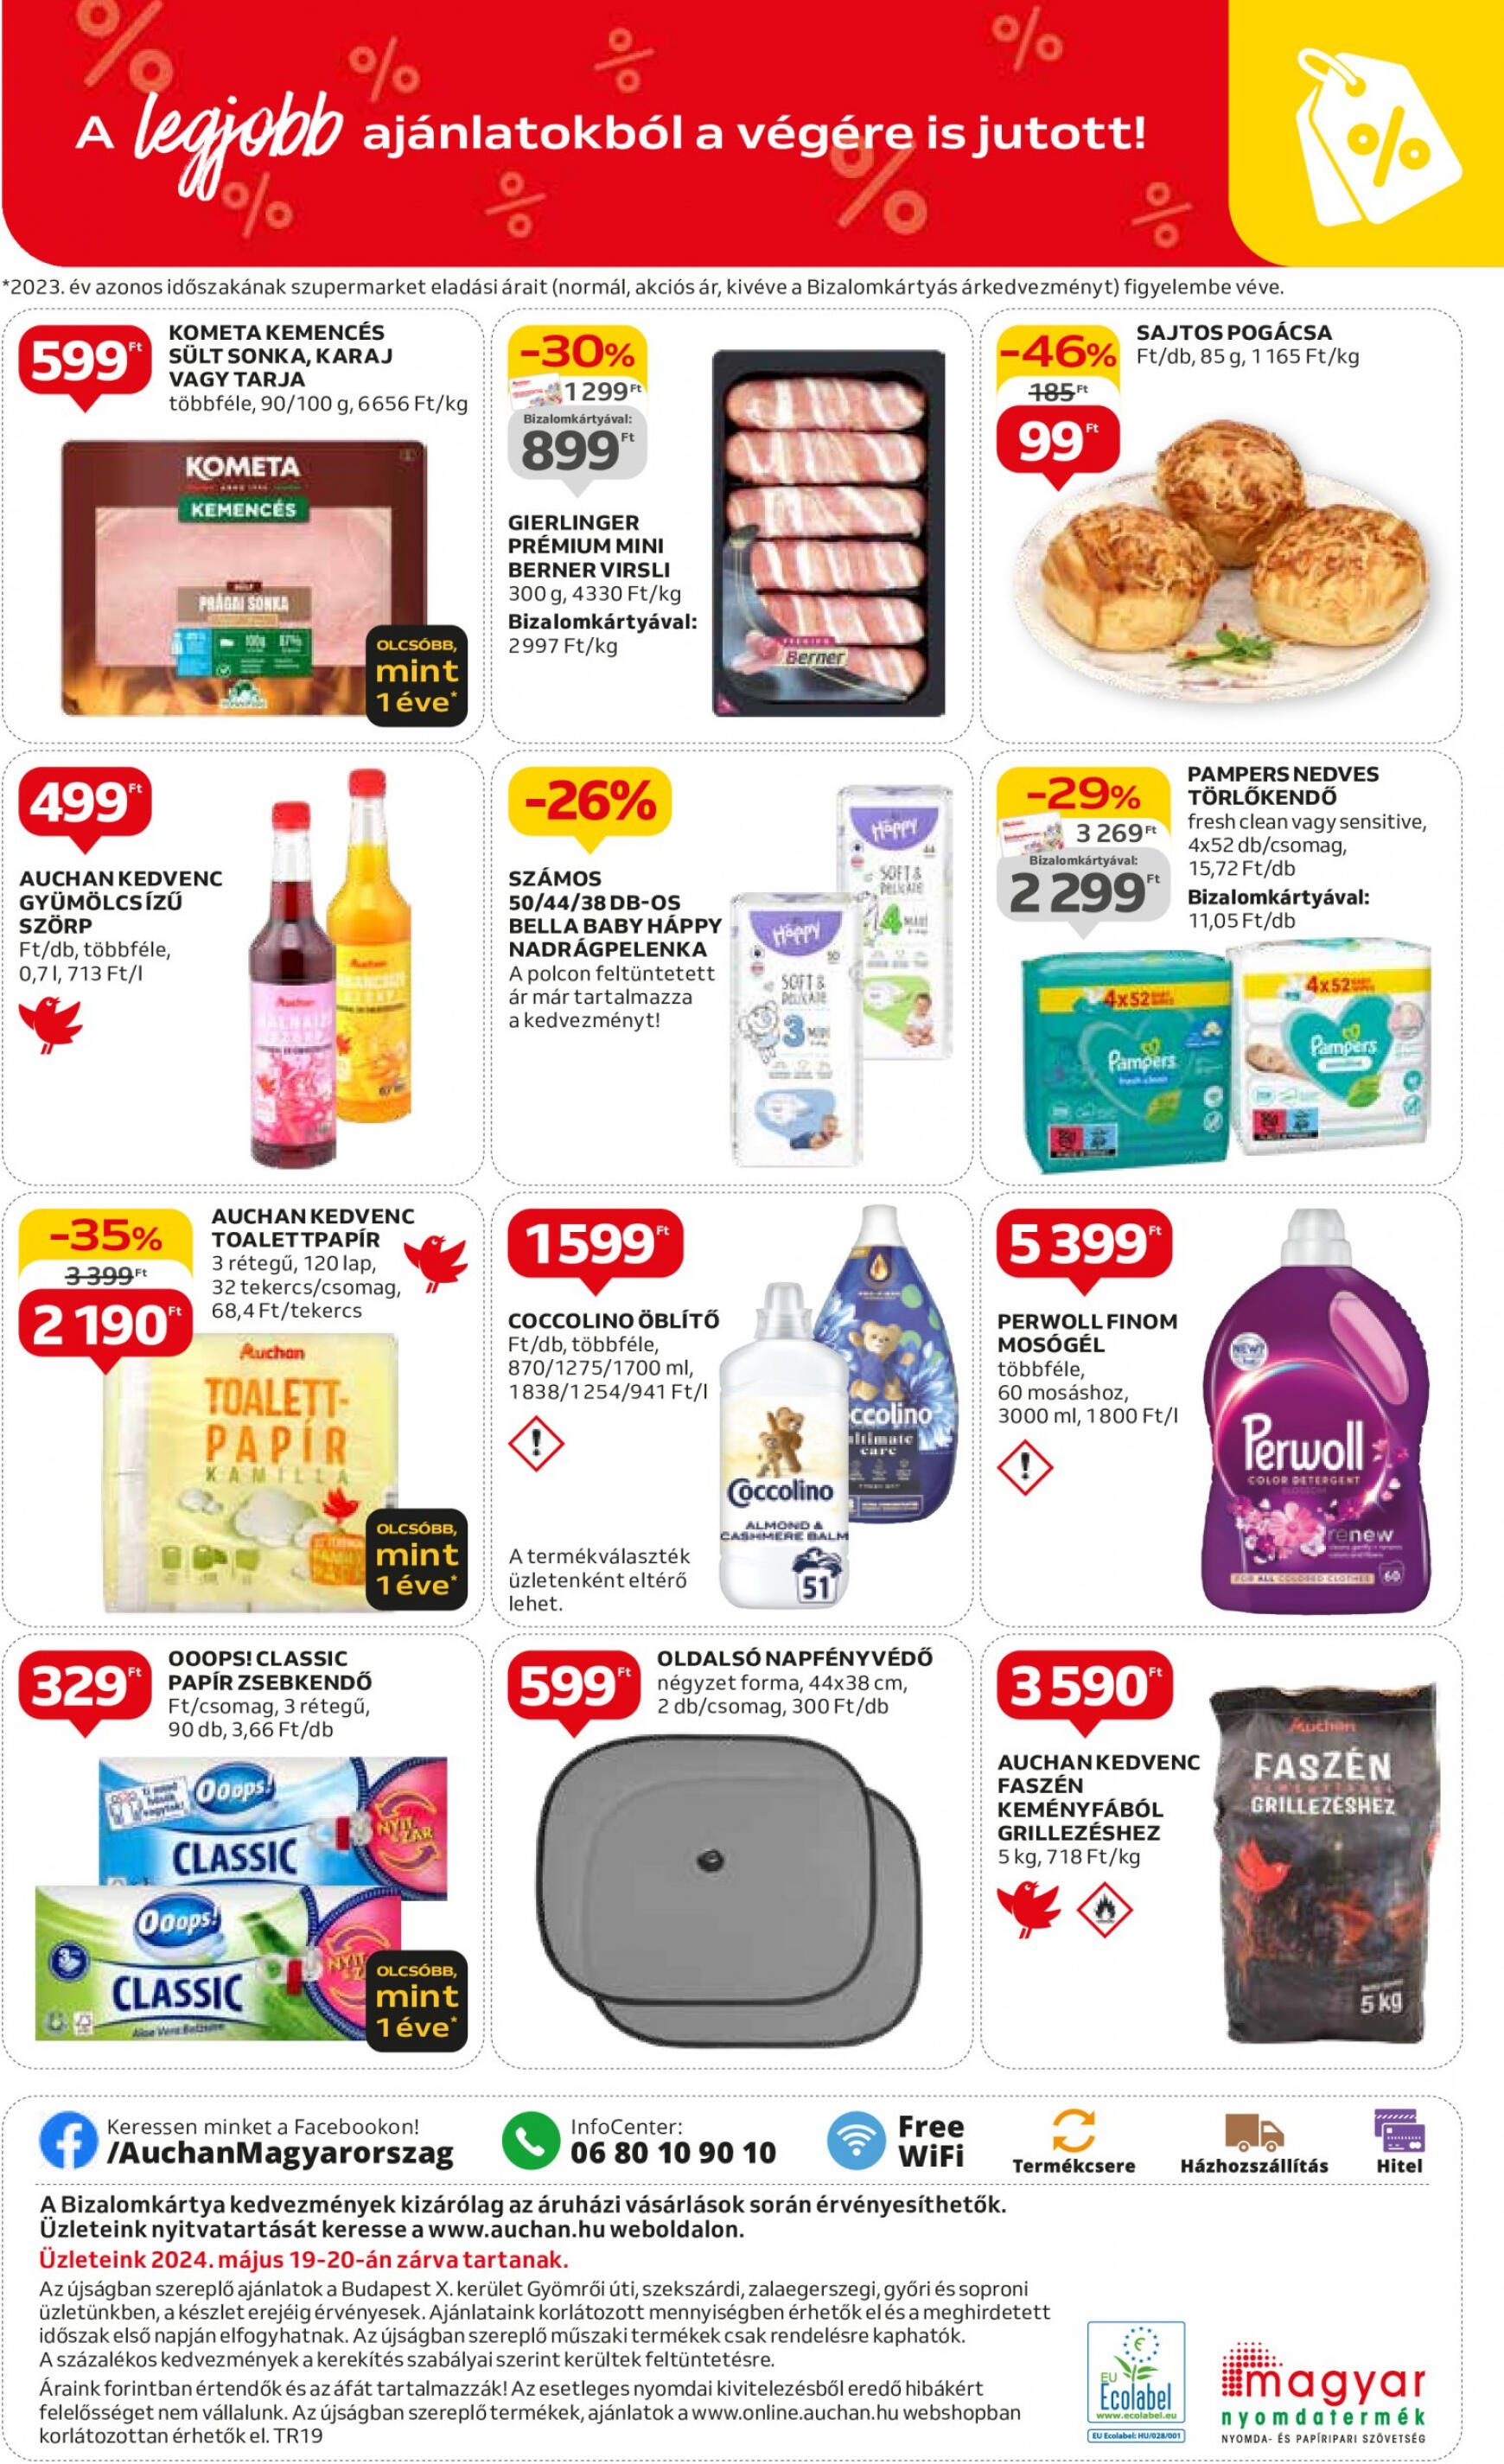 auchan - Aktuális újság Auchan szupermarket 05.09. - 05.15. - page: 12